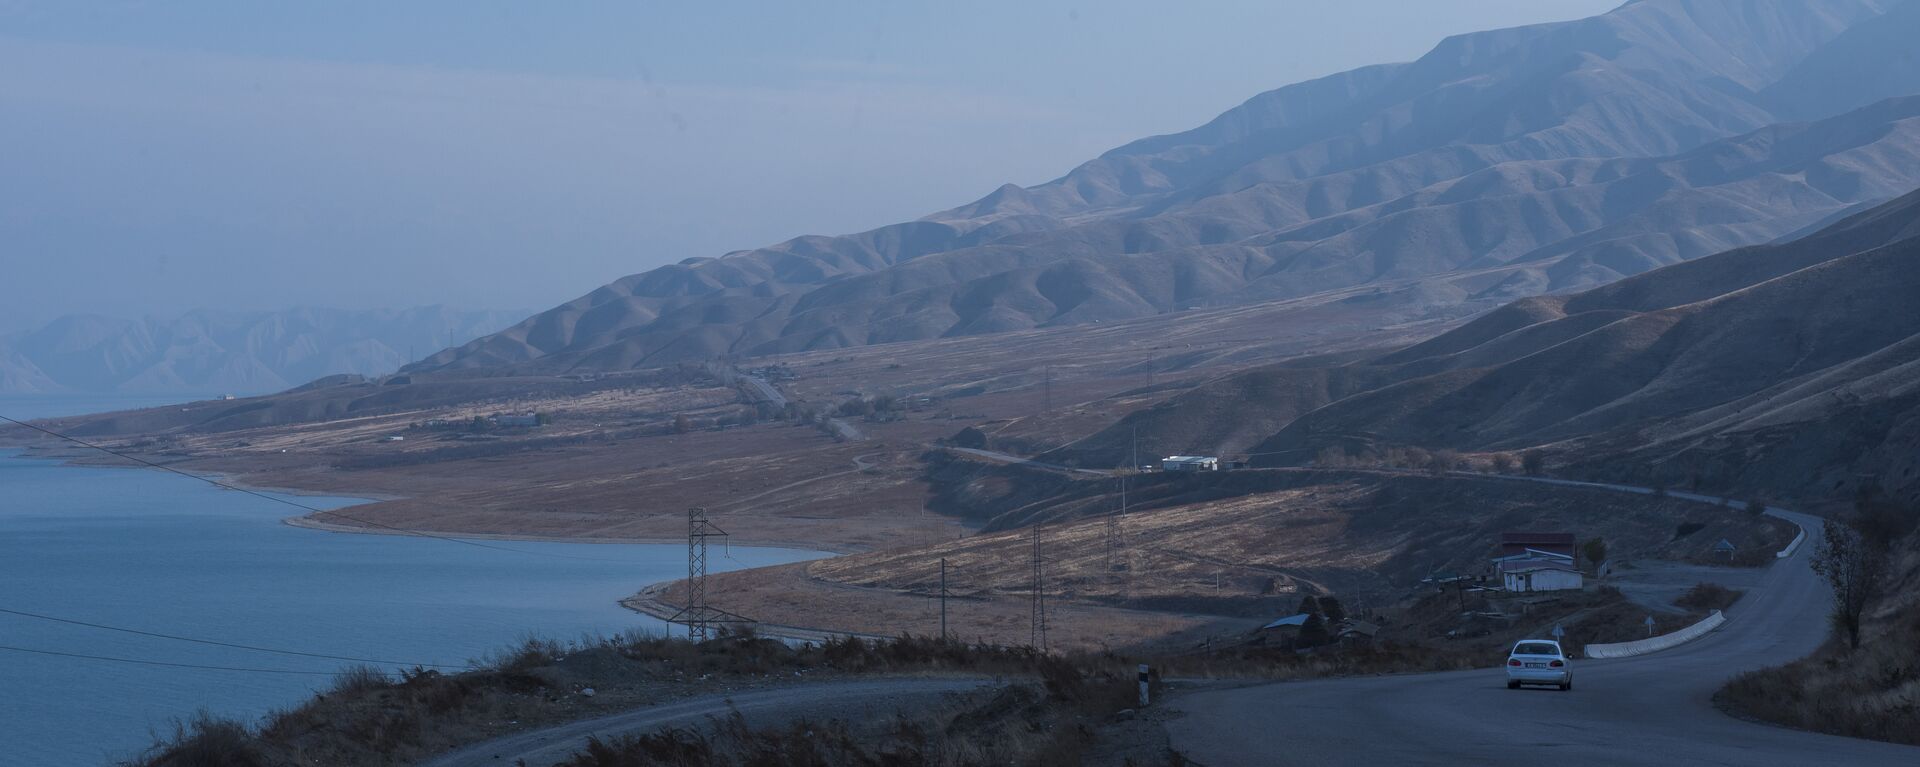 Токтогульское водохранилище на реке Нарын в Джалал-Абадской области - Sputnik Кыргызстан, 1920, 27.03.2021